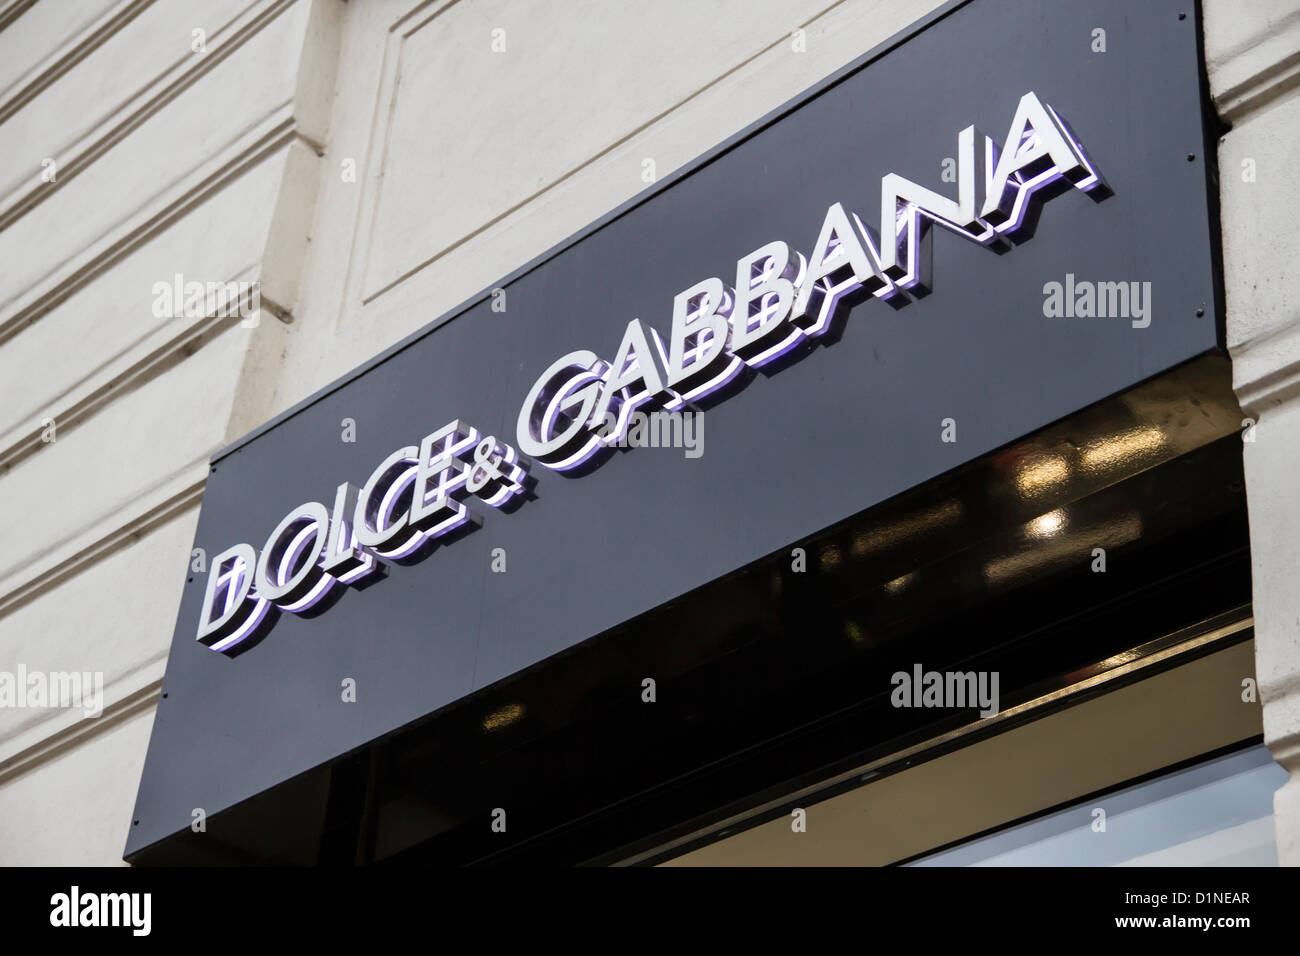 Dolce & Gabbana shop in Prague Stock Photo - Alamy